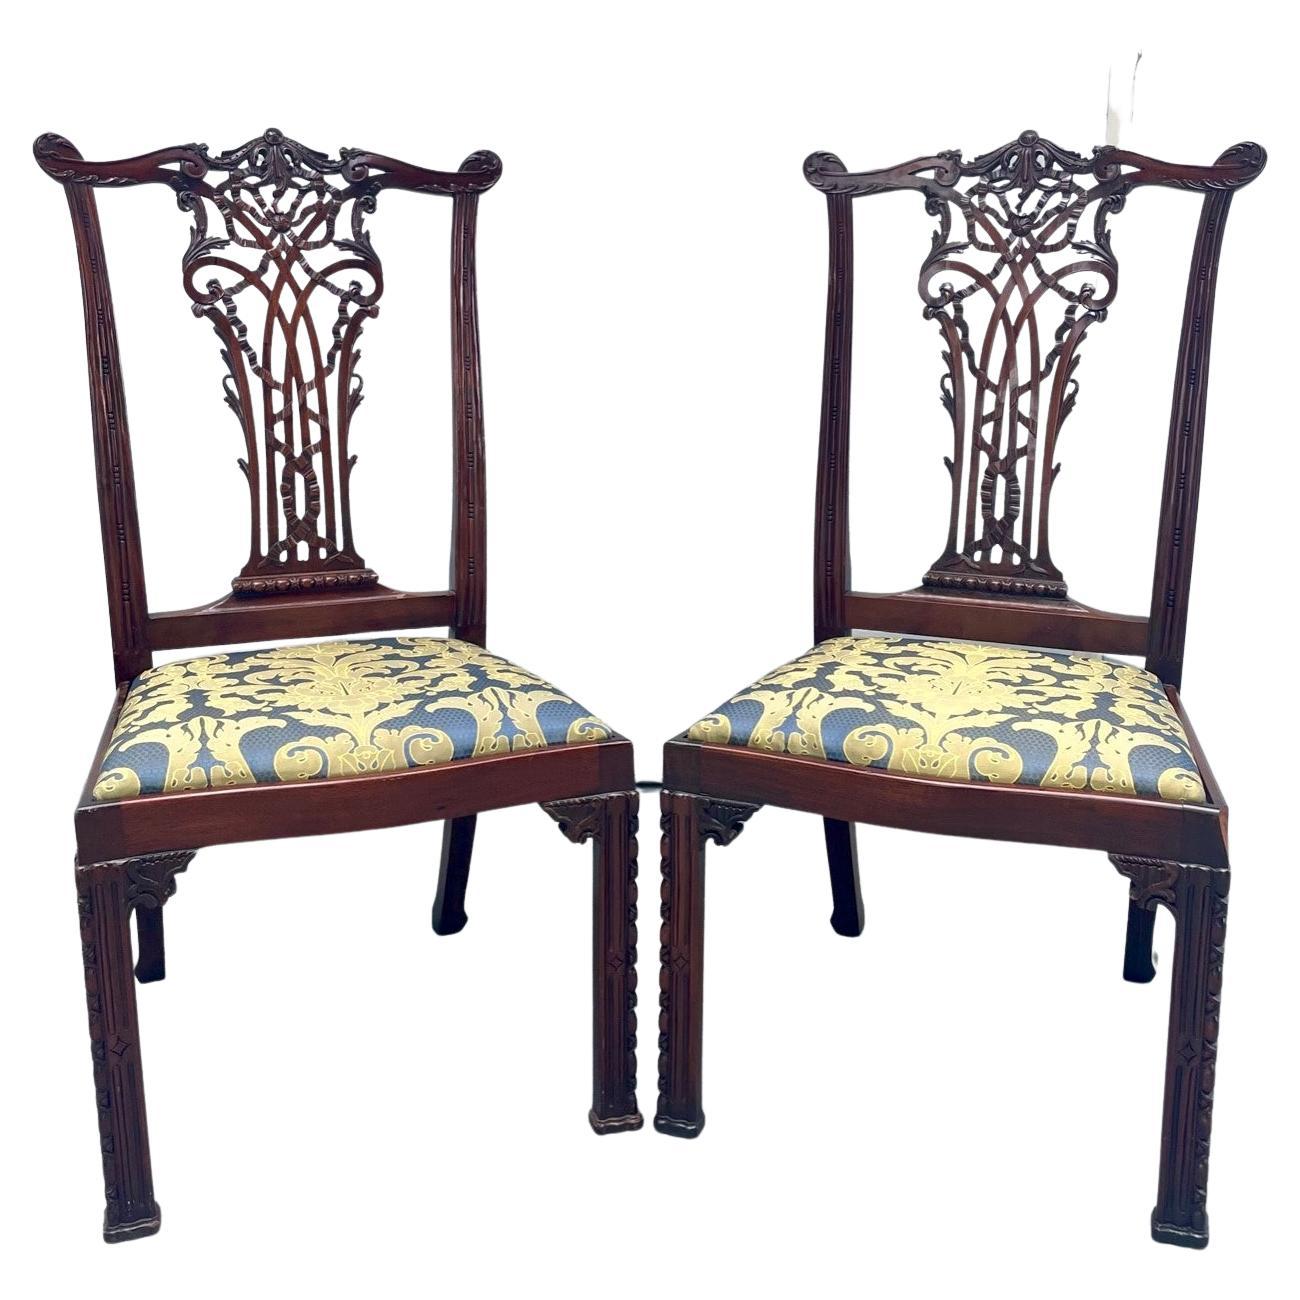 Paire de chaises d'appoint en acajou de style Chippendale anglais, vers 1890.

Merveilleuse paire de chaises d'appoint en acajou sculpté de style classique Chippendale. Ils sont fabriqués d'après l'un des plus grands fabricants de meubles anglais.